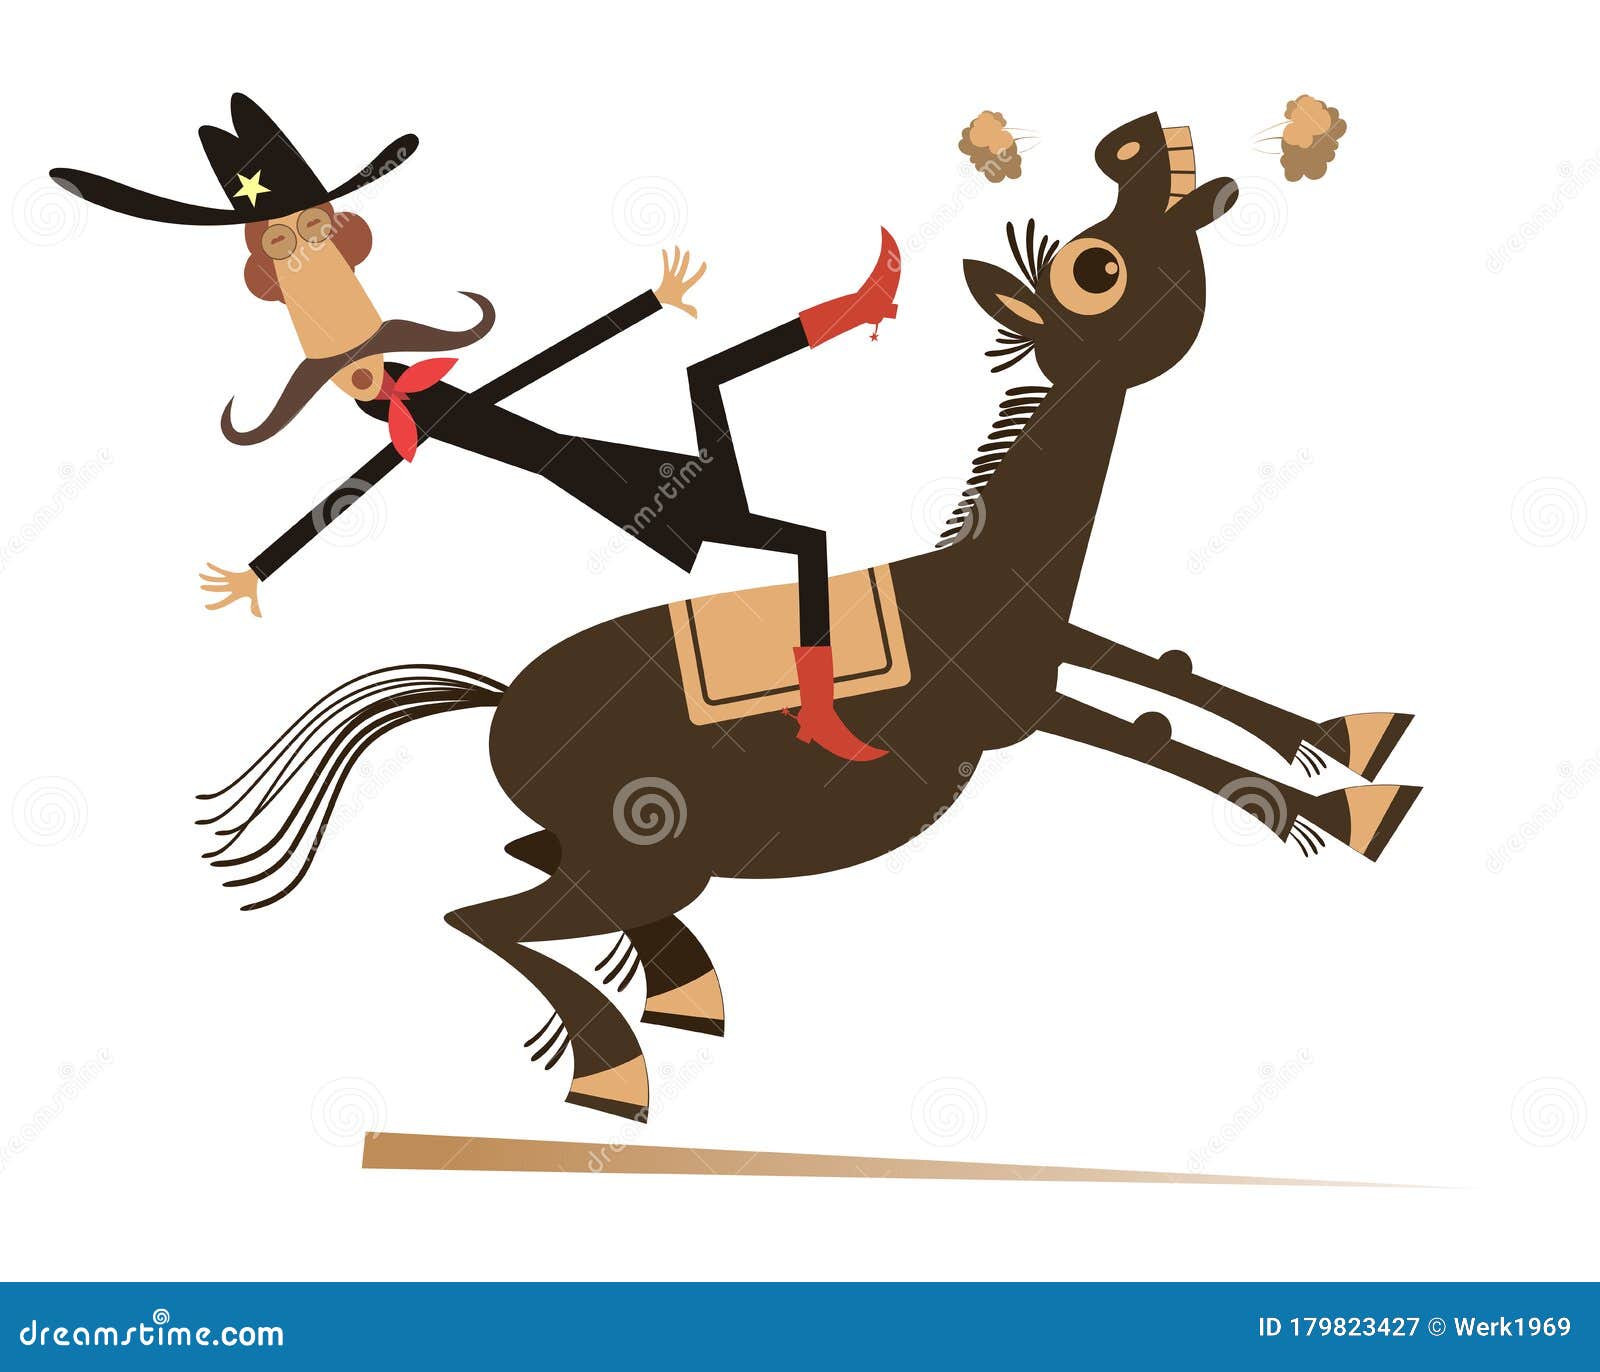 Vetores e ilustrações de Cavalo pulando para download gratuito